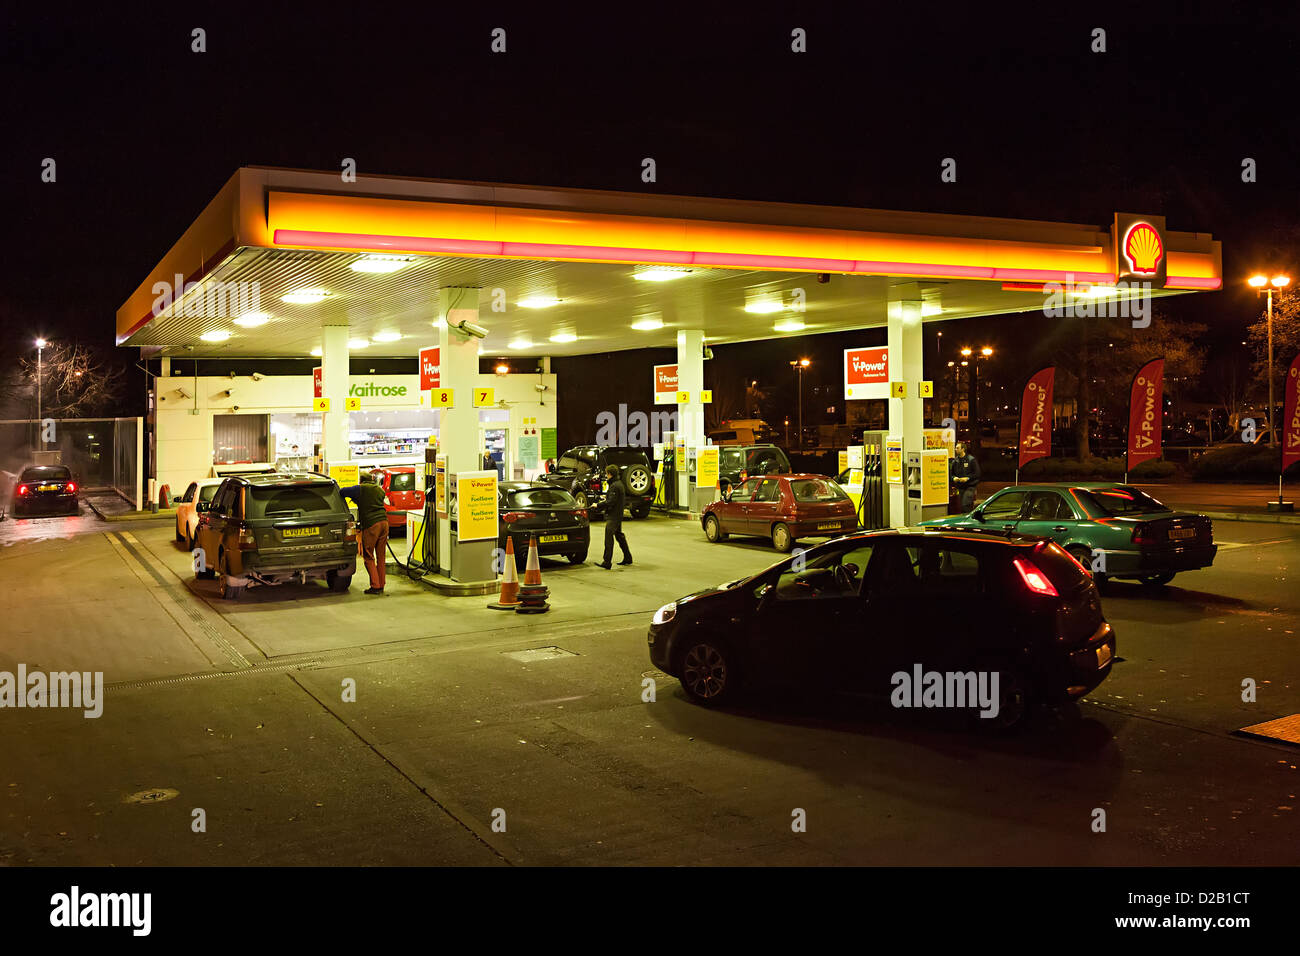 Tankstelle in Waitrose-Supermarkt bei Nacht, Wales, UK Stockfoto